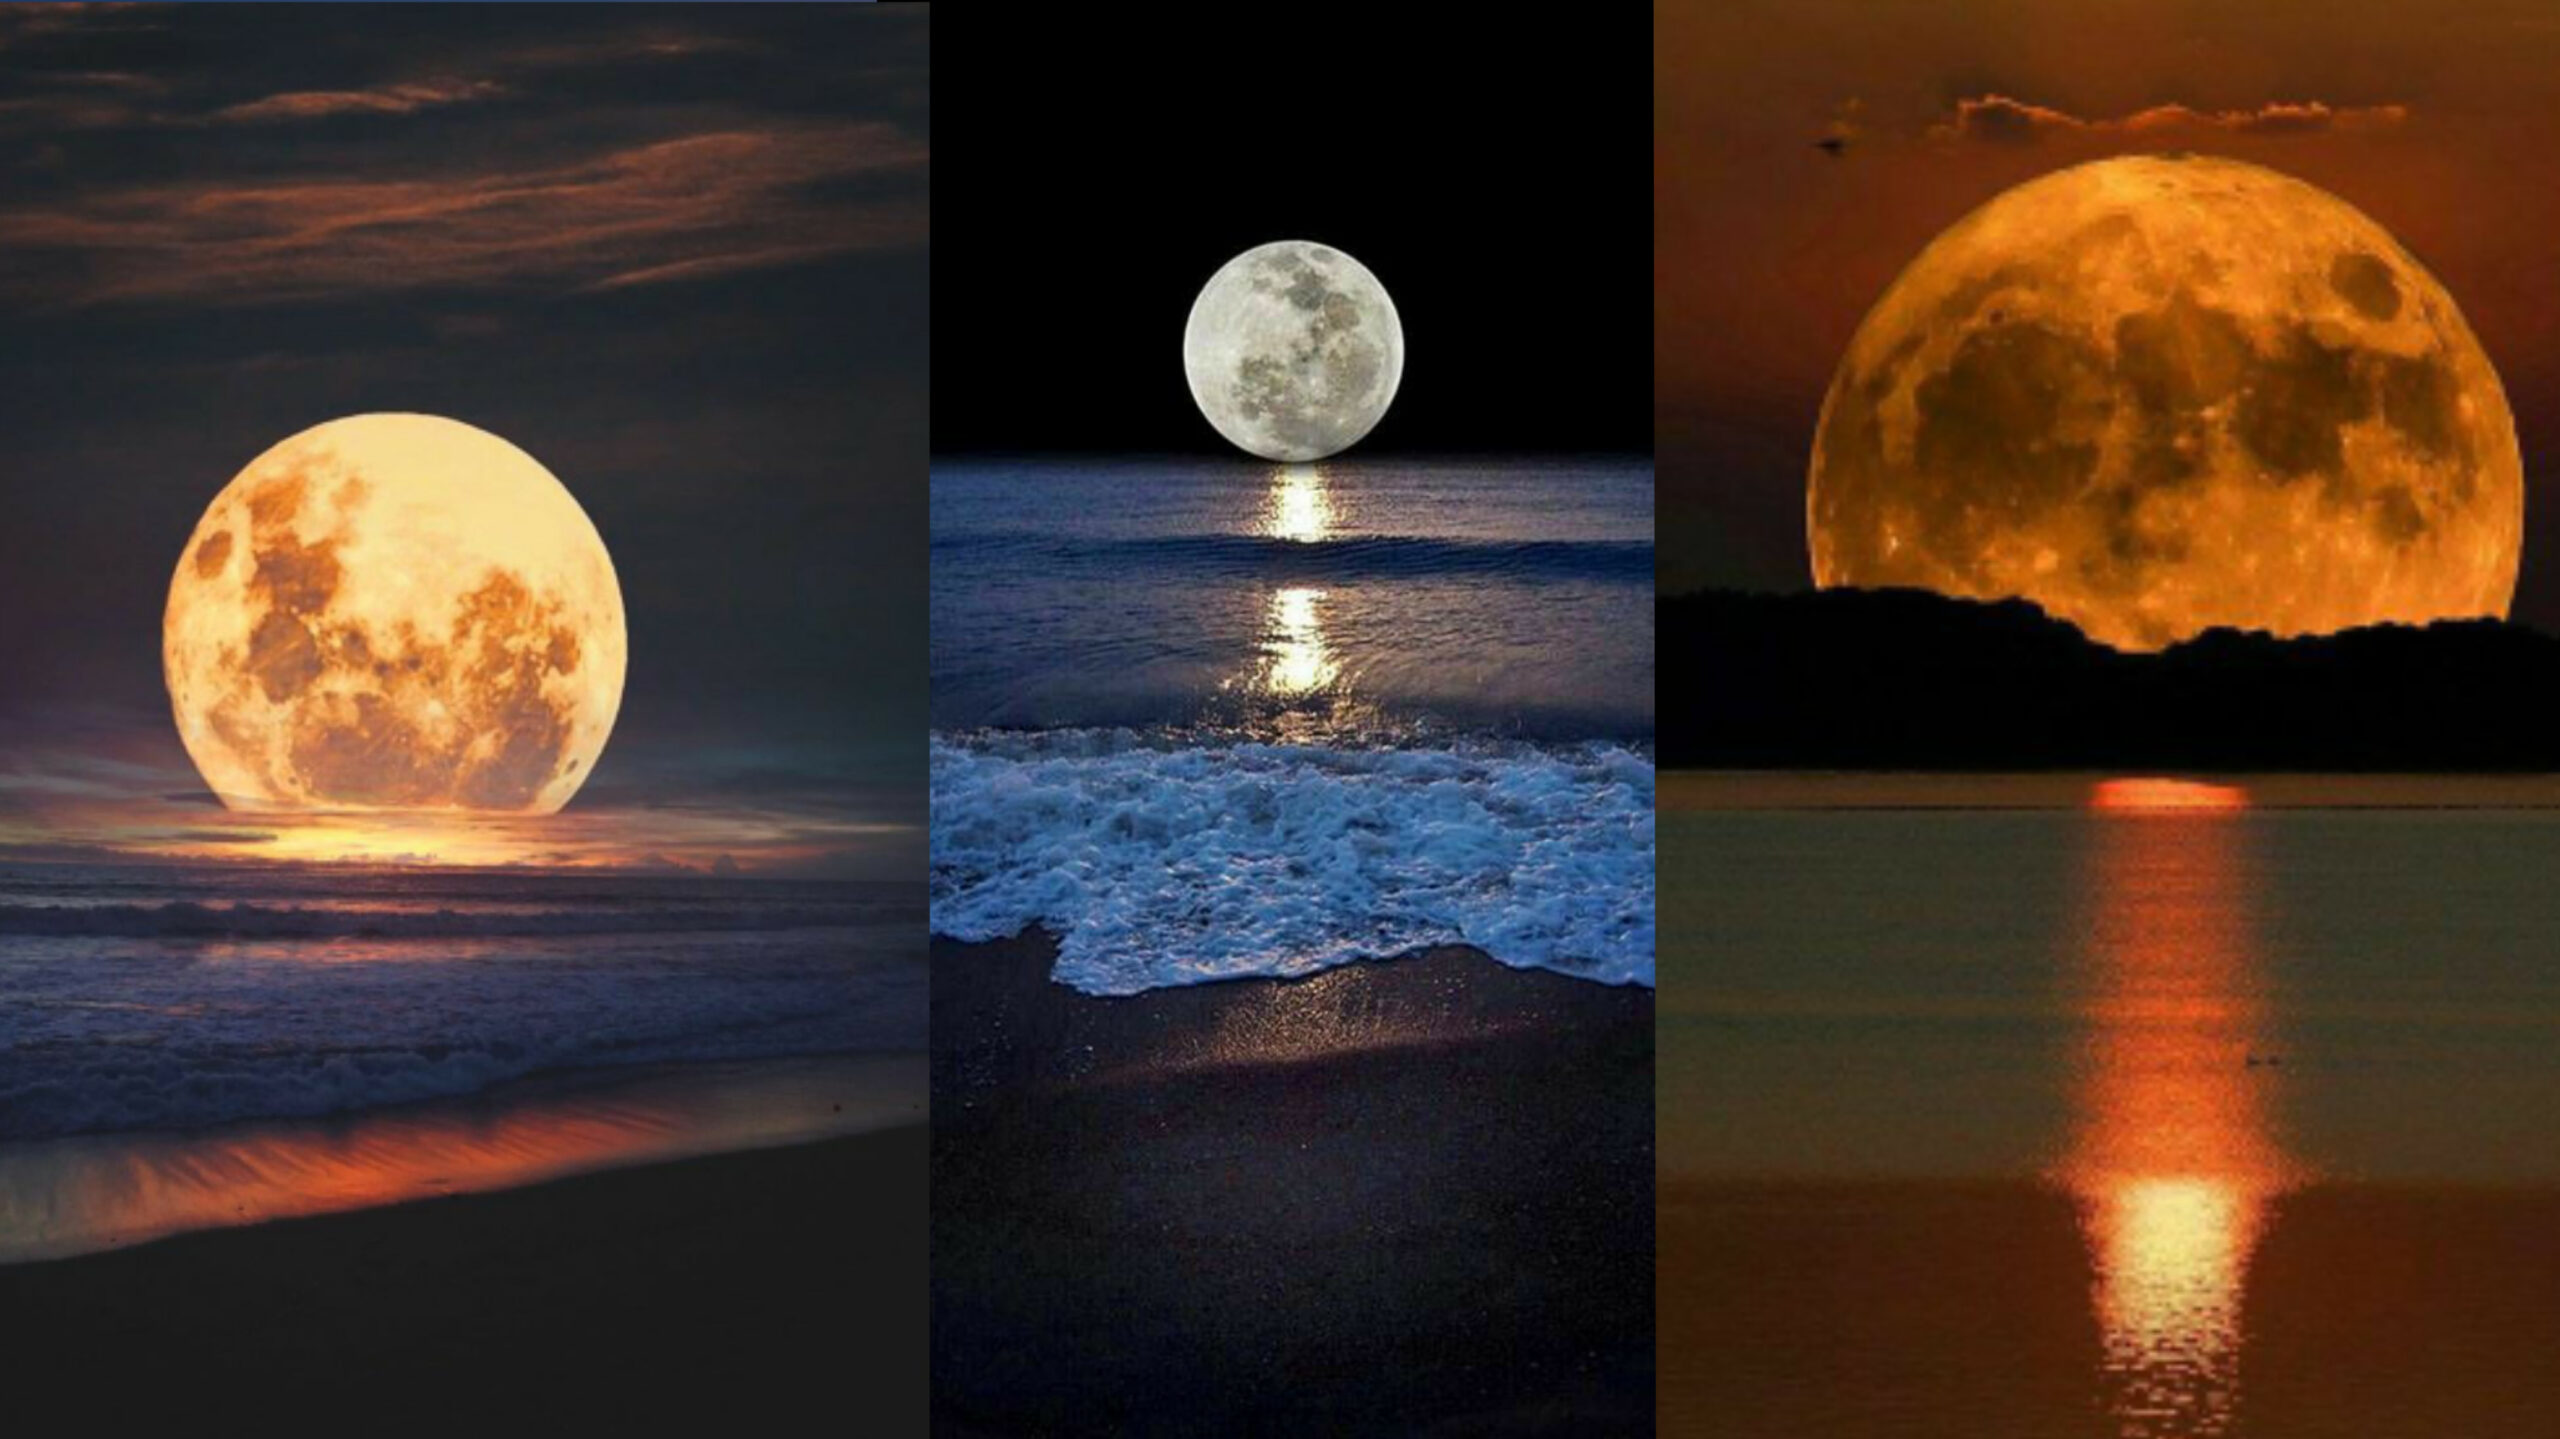 صور خلفيات قمر عالية الجودة , اجمل خلفيات قمر